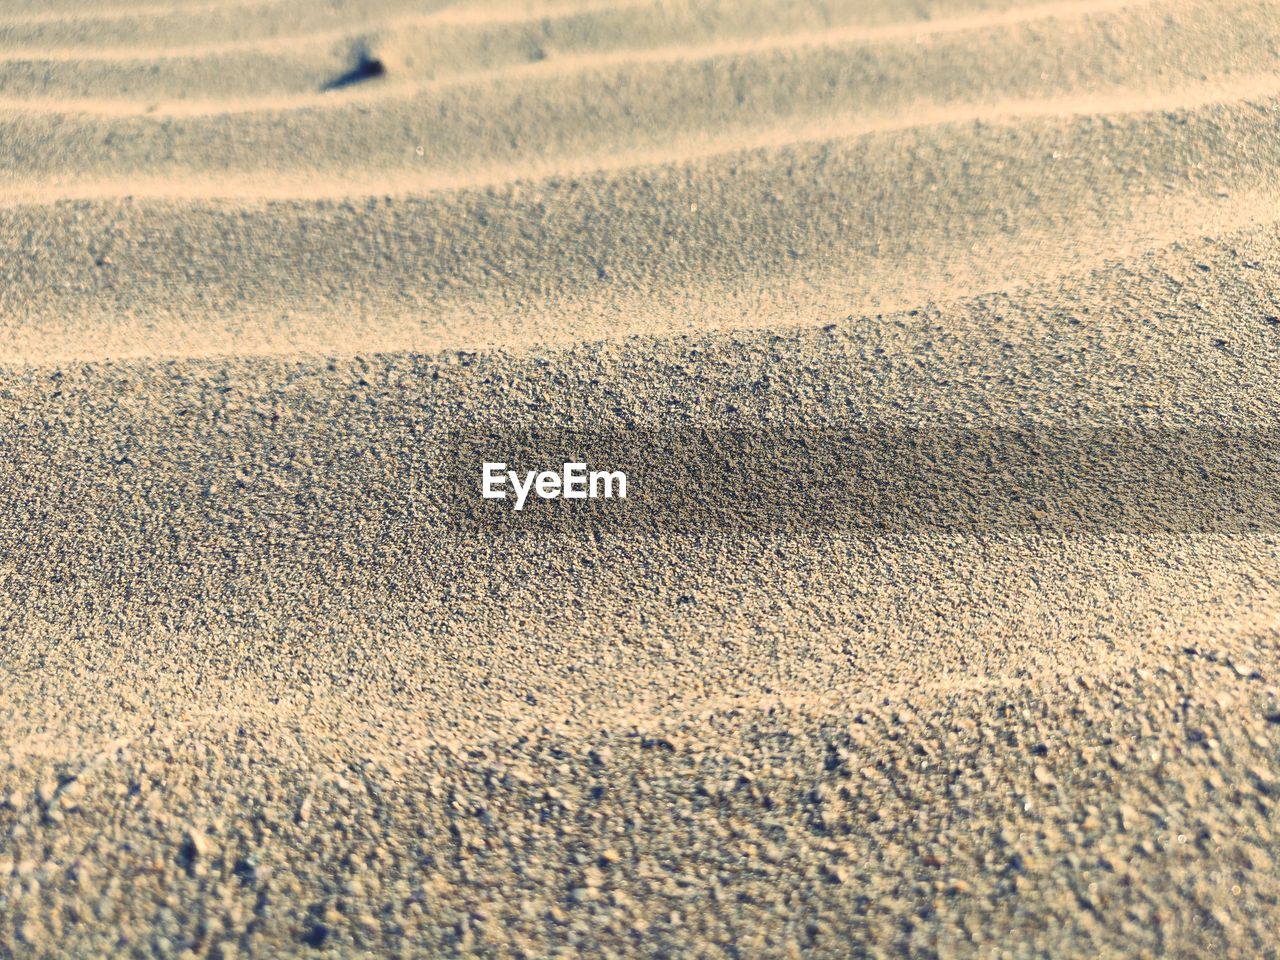 Full frame shot of sand on land